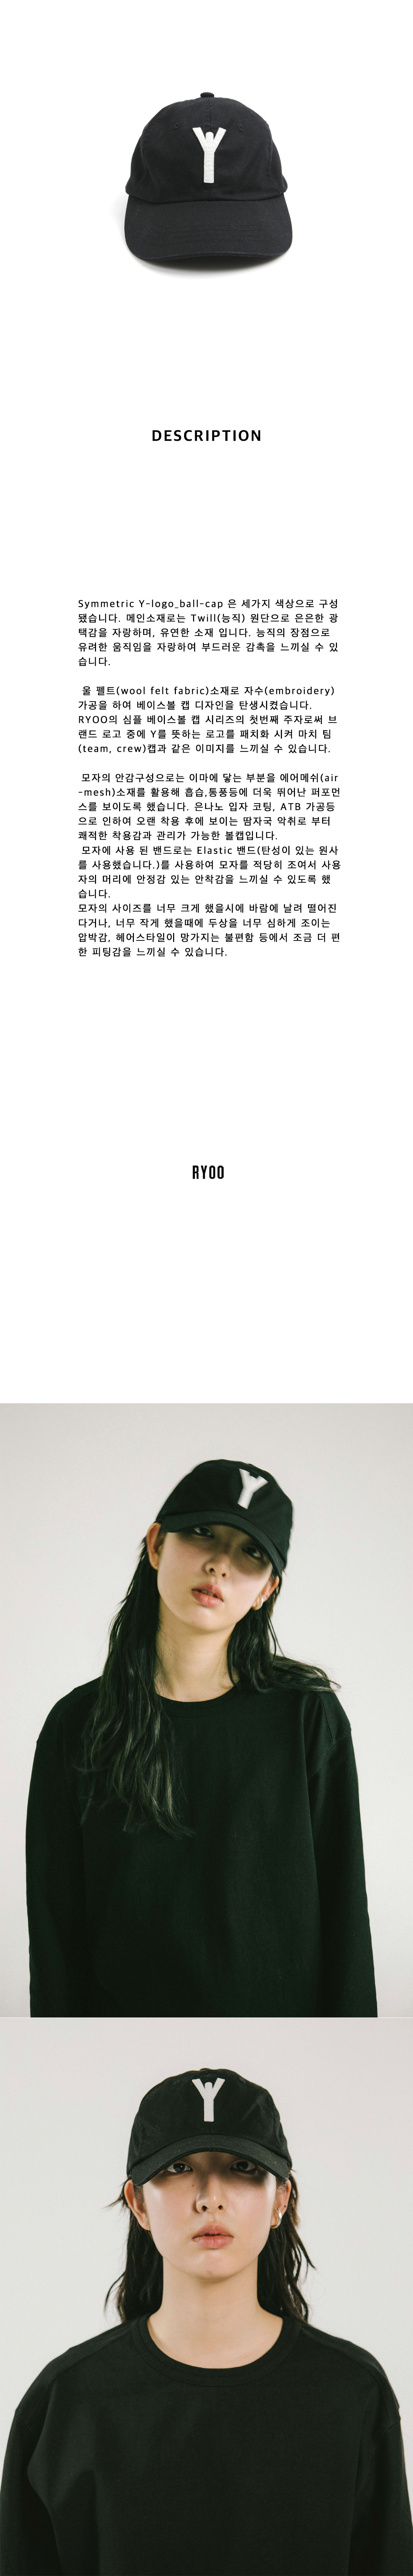 RYOO_20ss_ad_y-logo-cap_bk_1.jpg